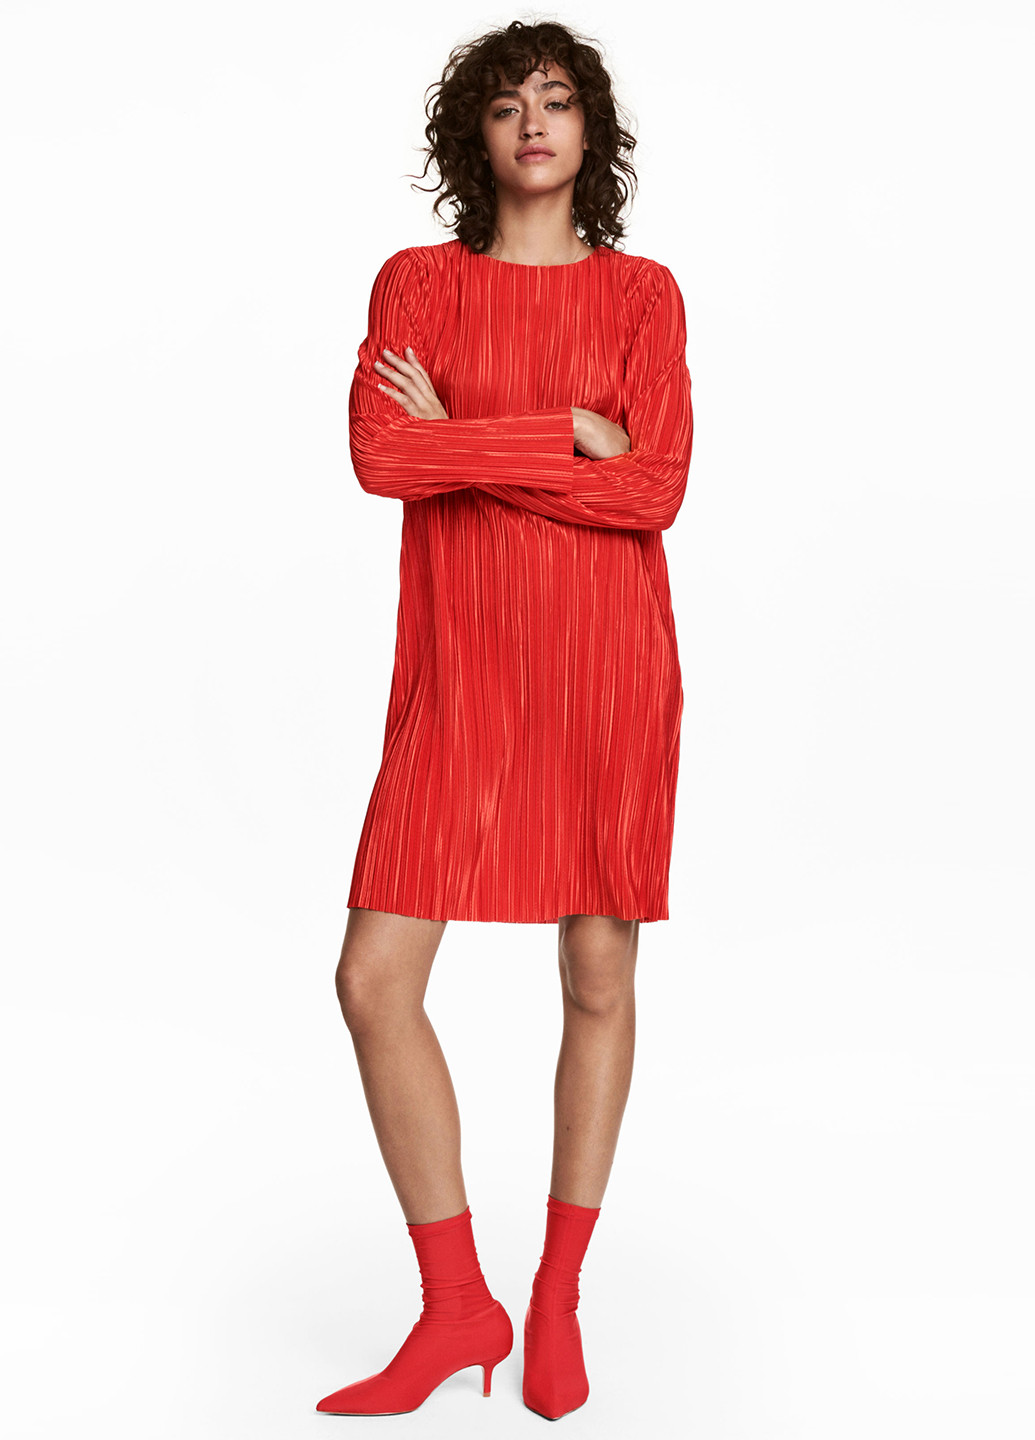 Красное коктейльное платье H&M фактурное